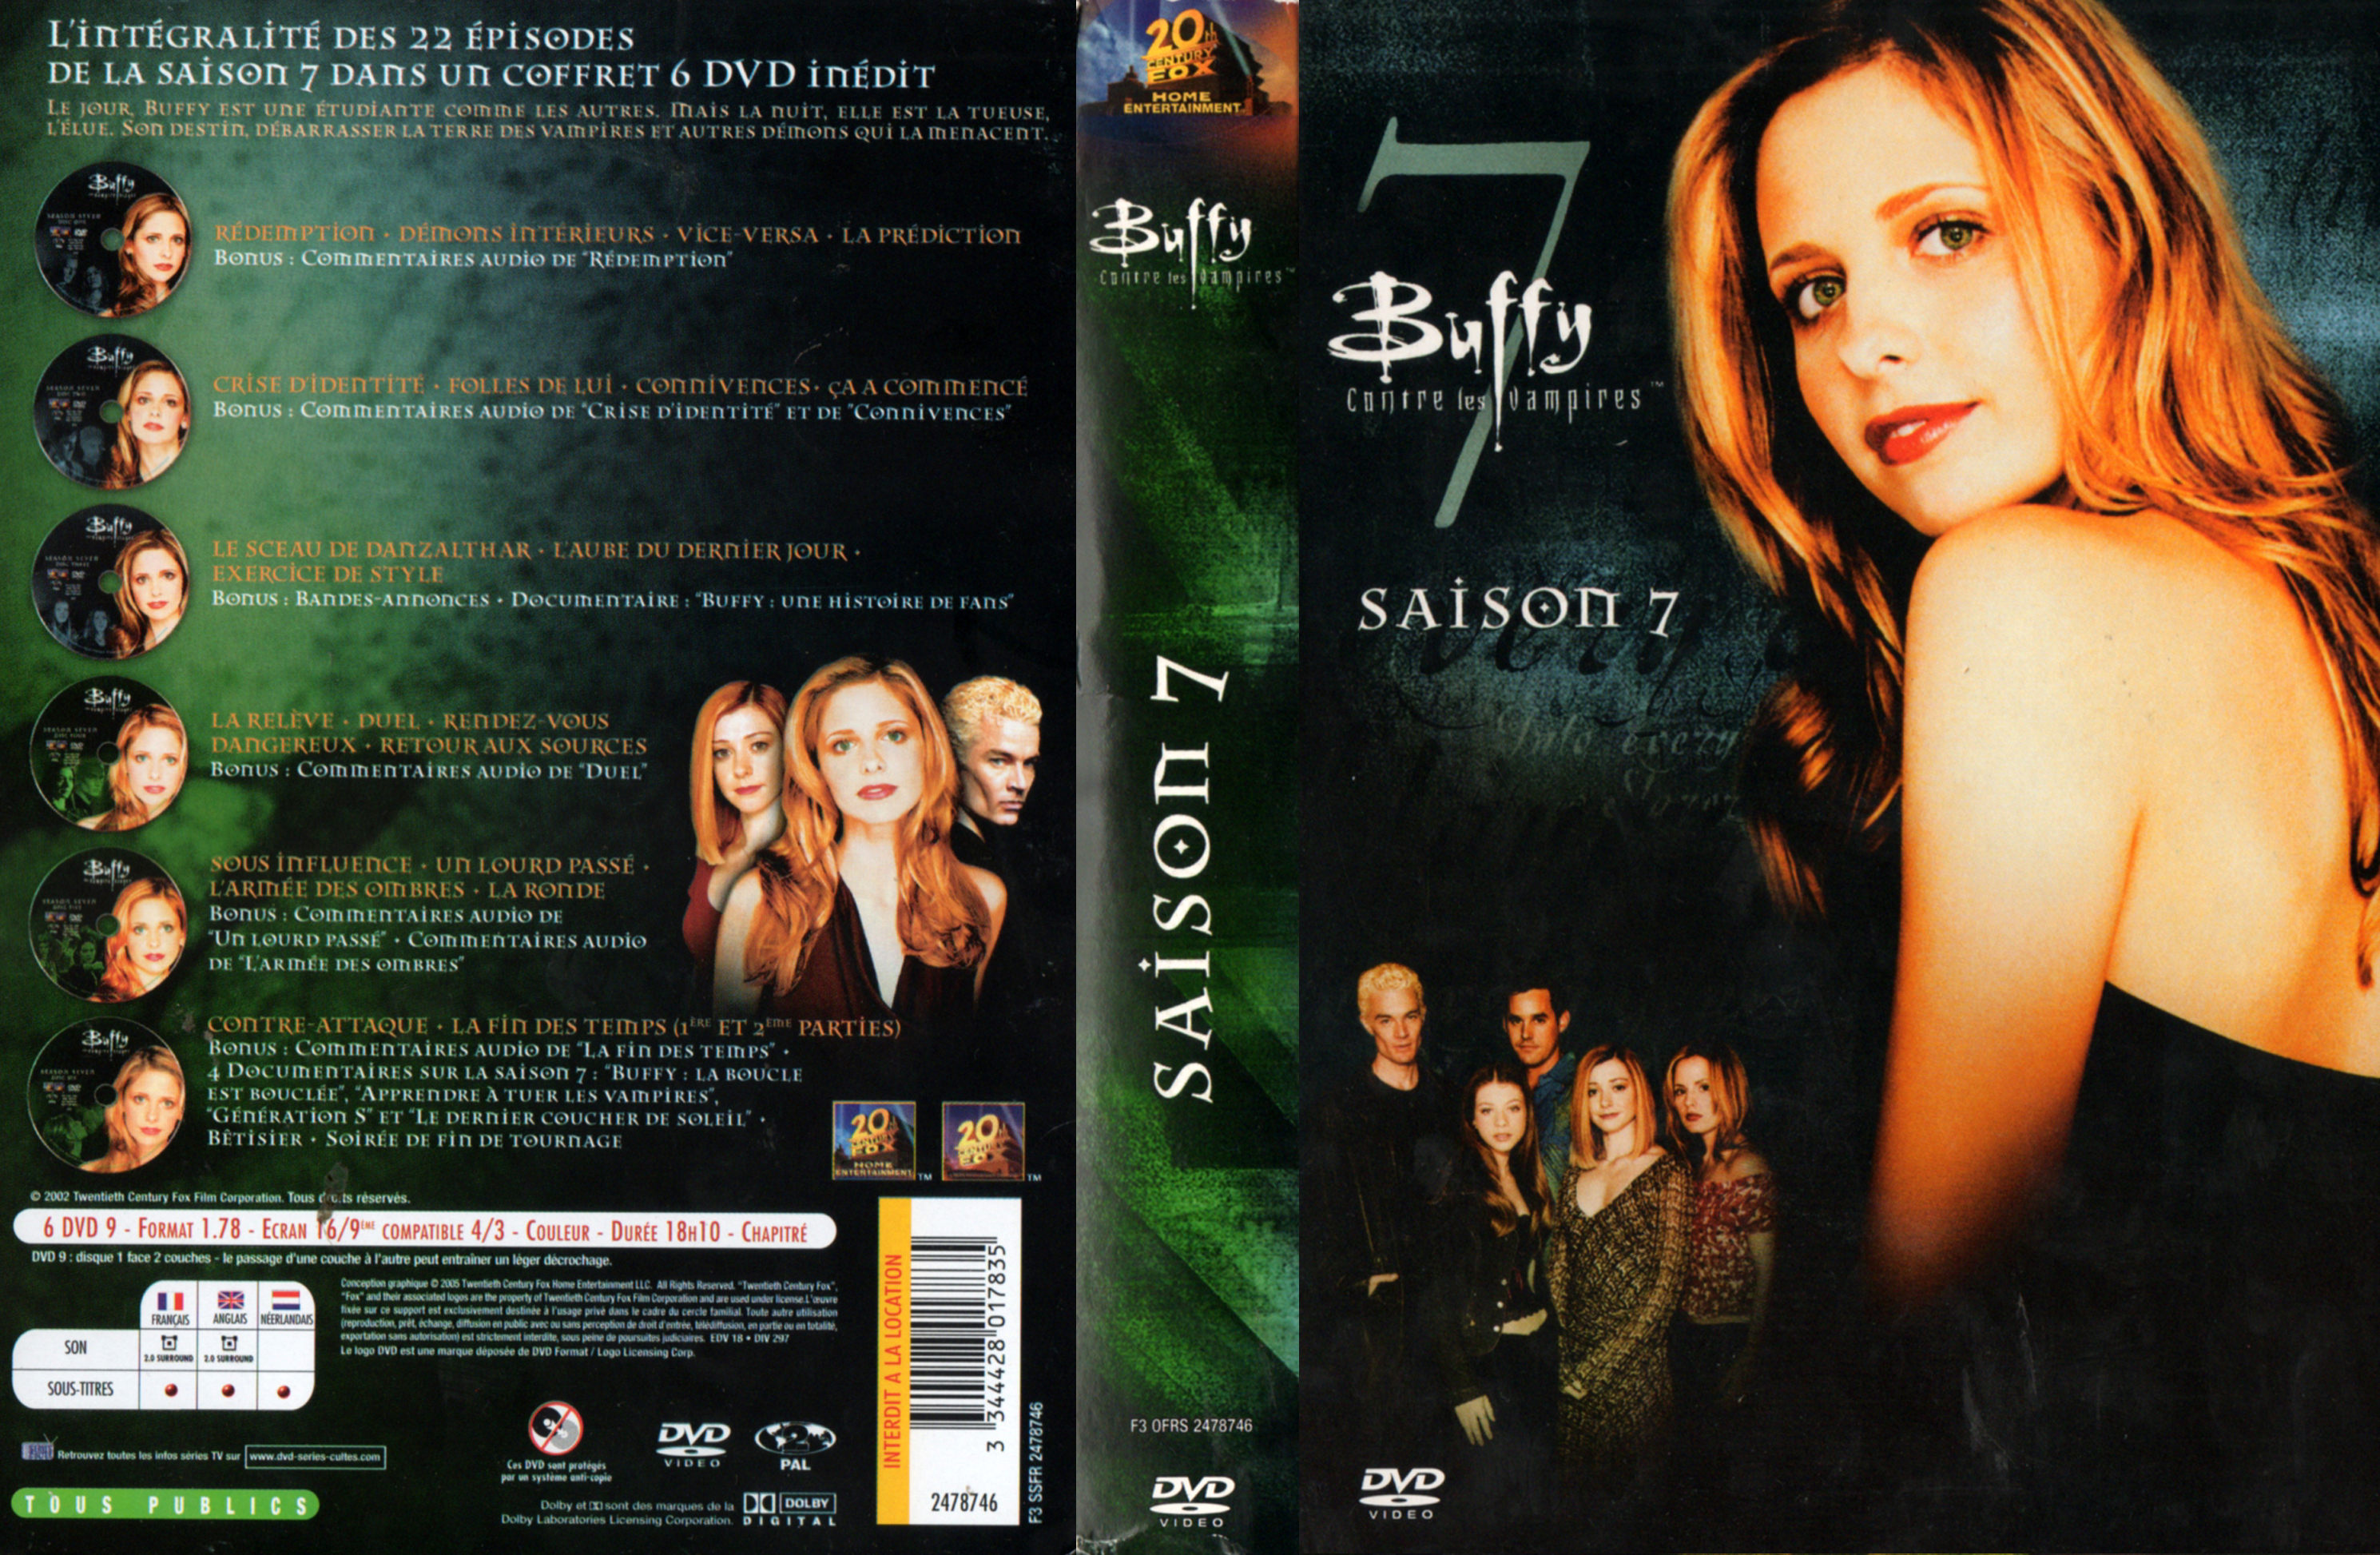 Jaquette DVD Buffy contre les vampires Saison 7 COFFRET